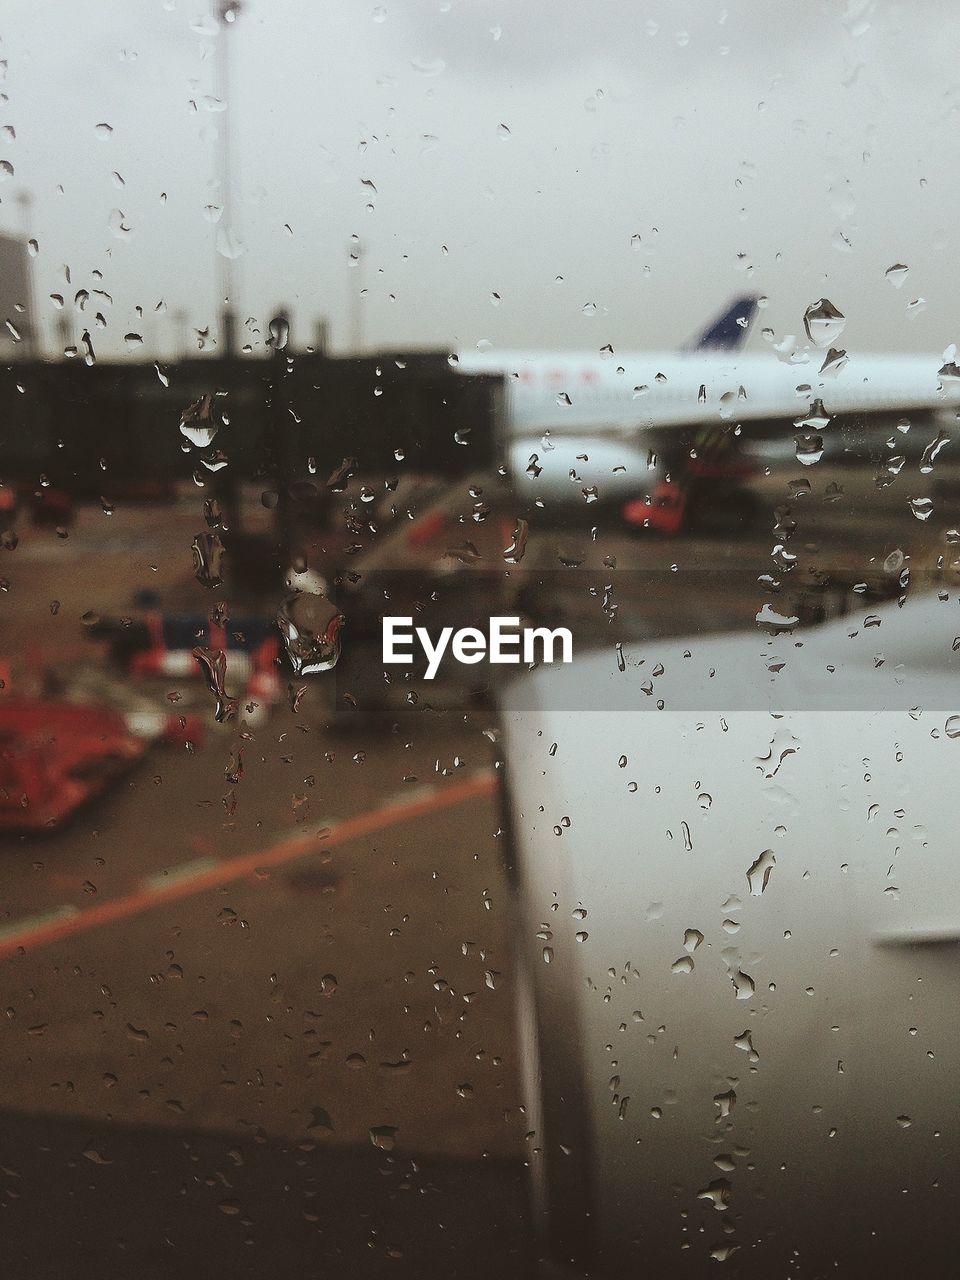 Airport seen through wet glass